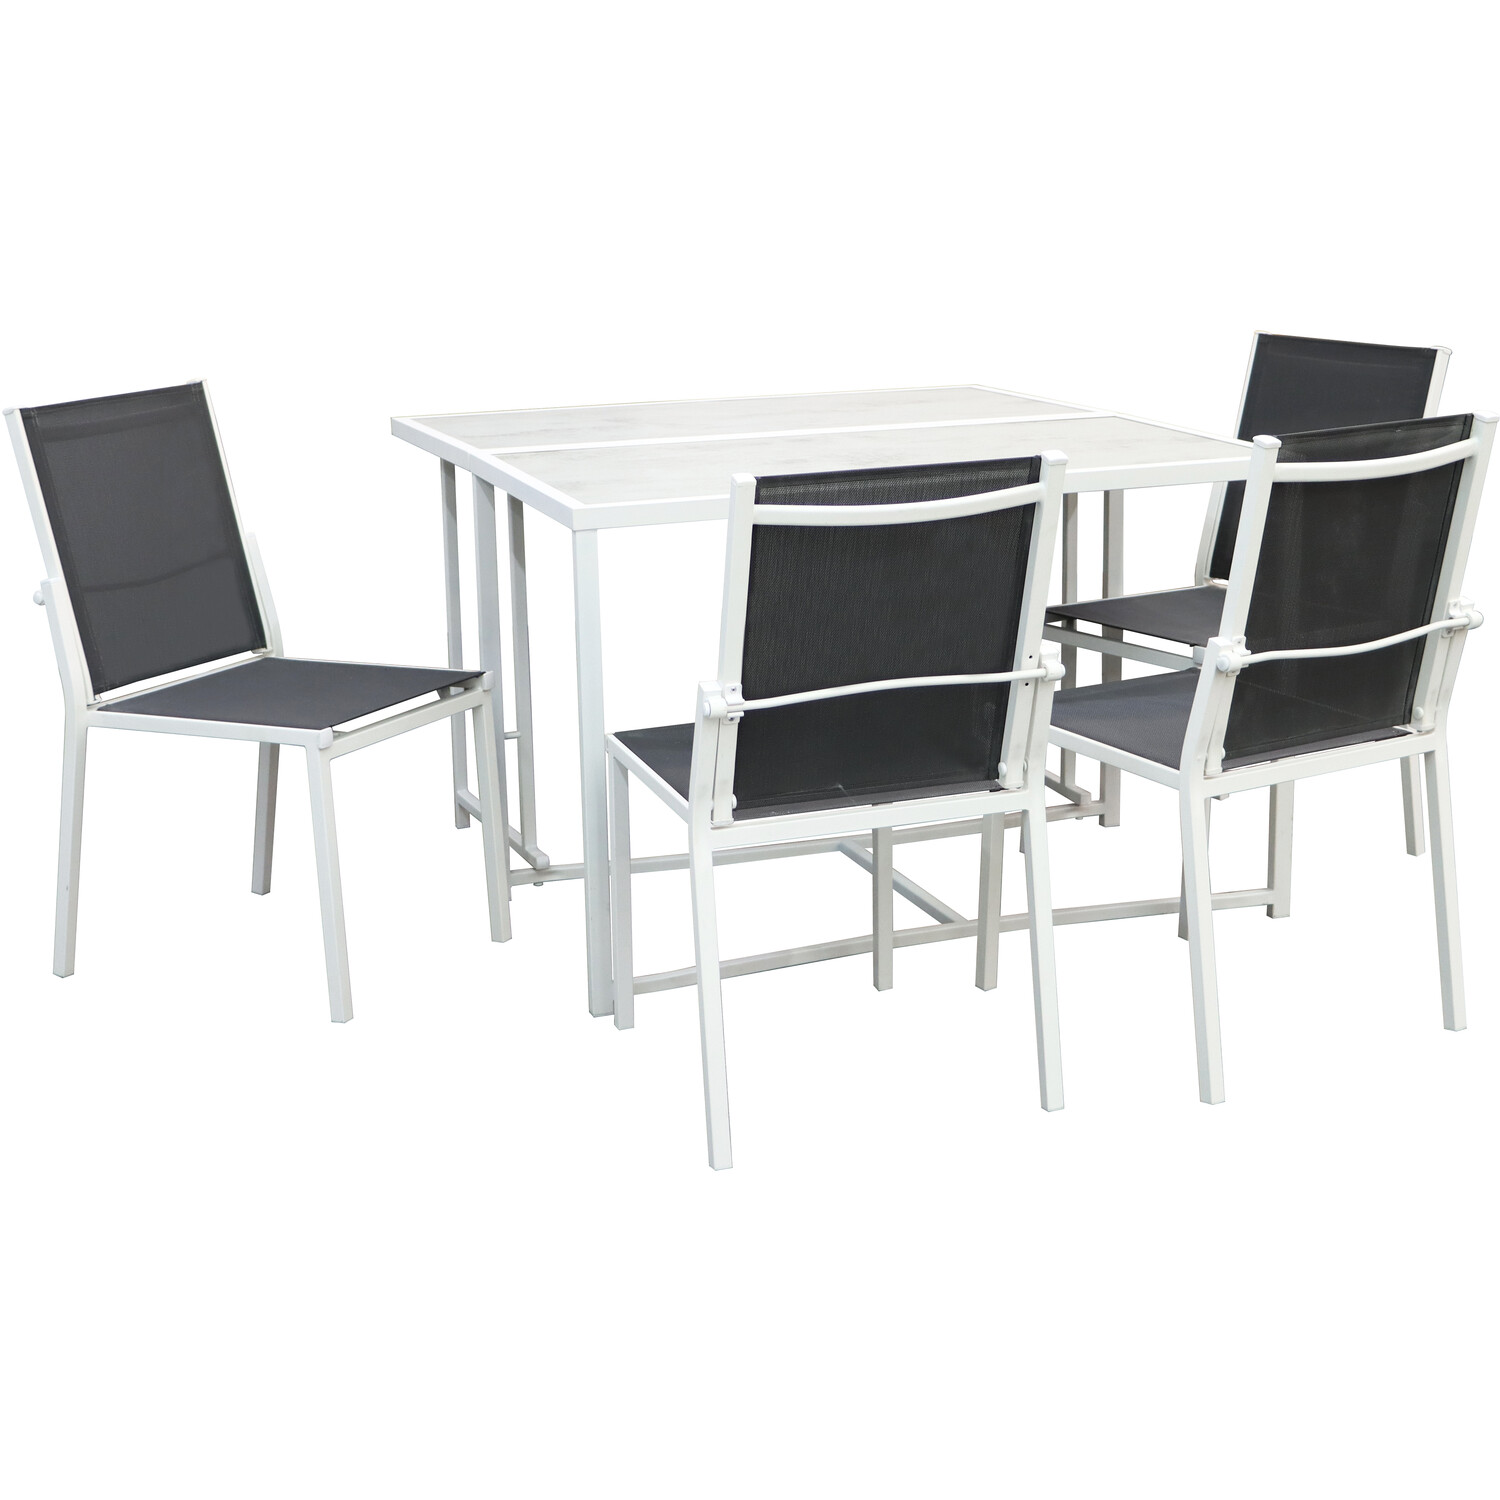 Milan 4 Seater Foldable Dining Set Image 2